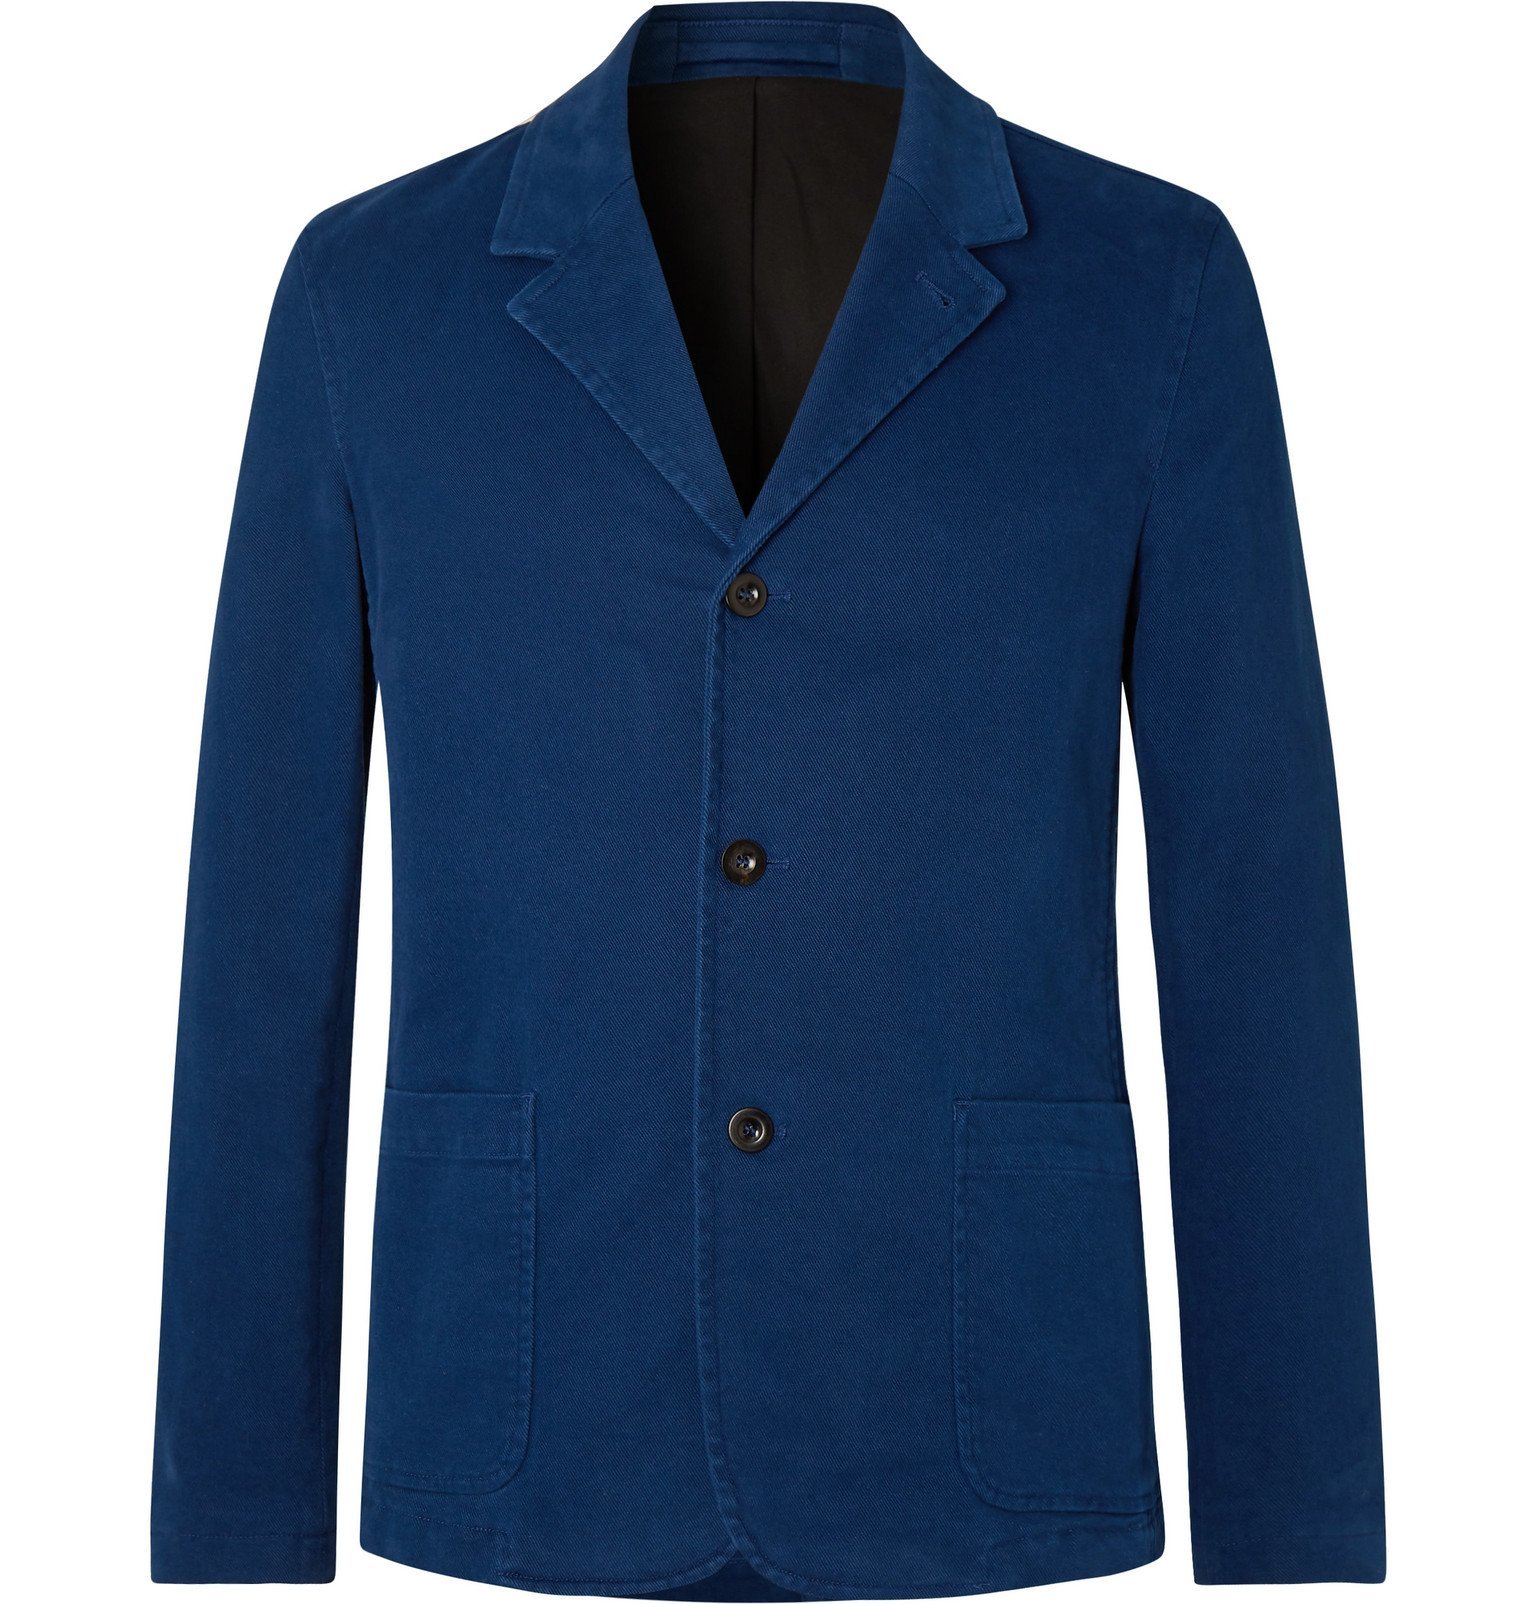 Mr P. - Unstructured Cotton-Blend Moleskin Suit Jacket - Blue Mr P.